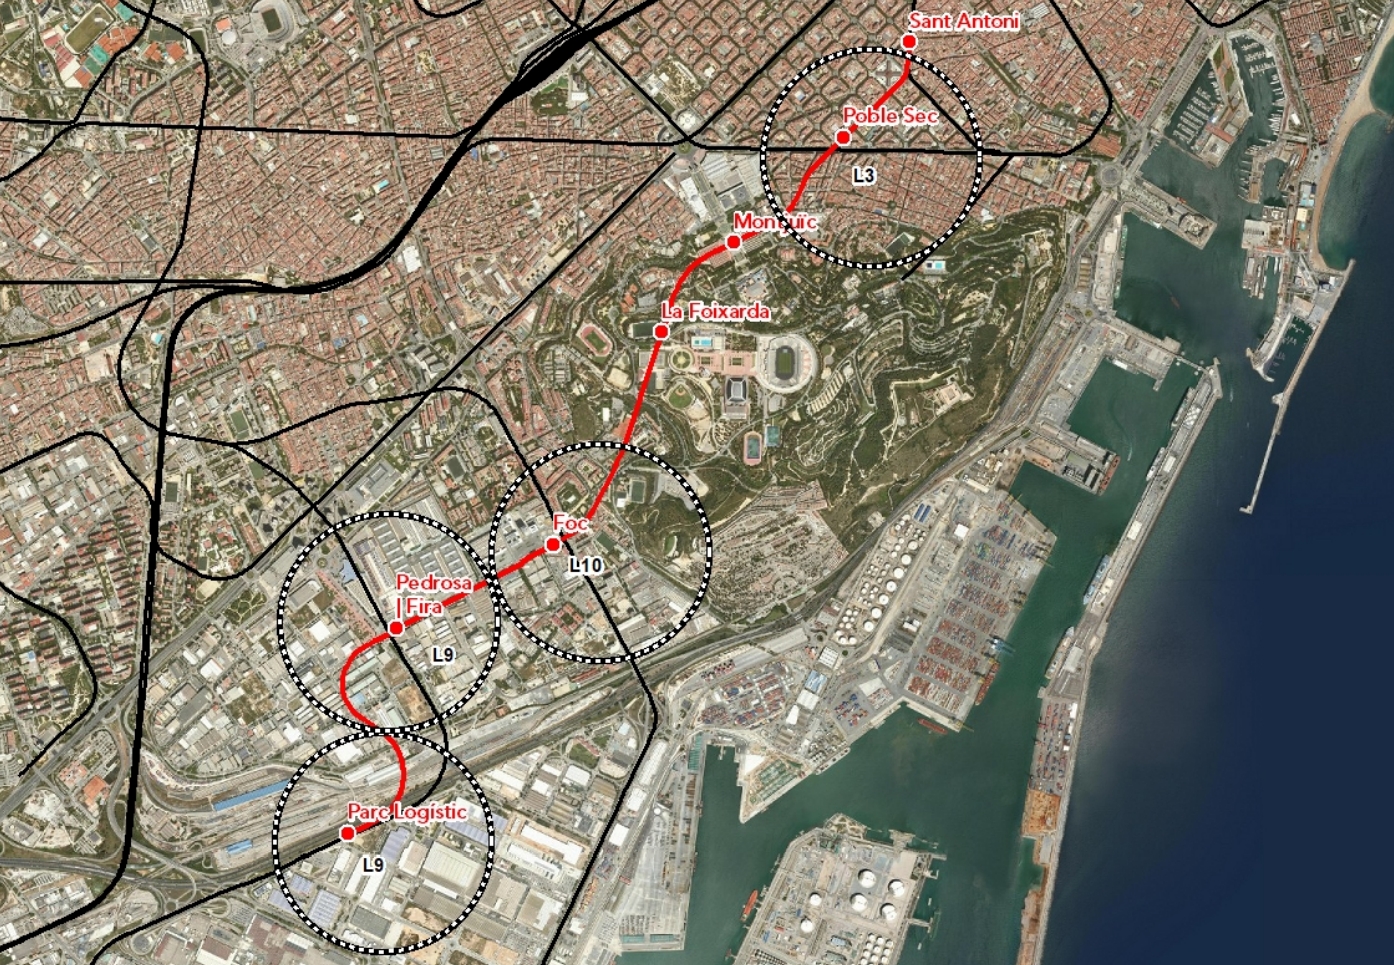 Traçat i noves estacions del perllongament de la L2 des de Sant Antoni fins a l'actual estació de Parc Logístic de la L9